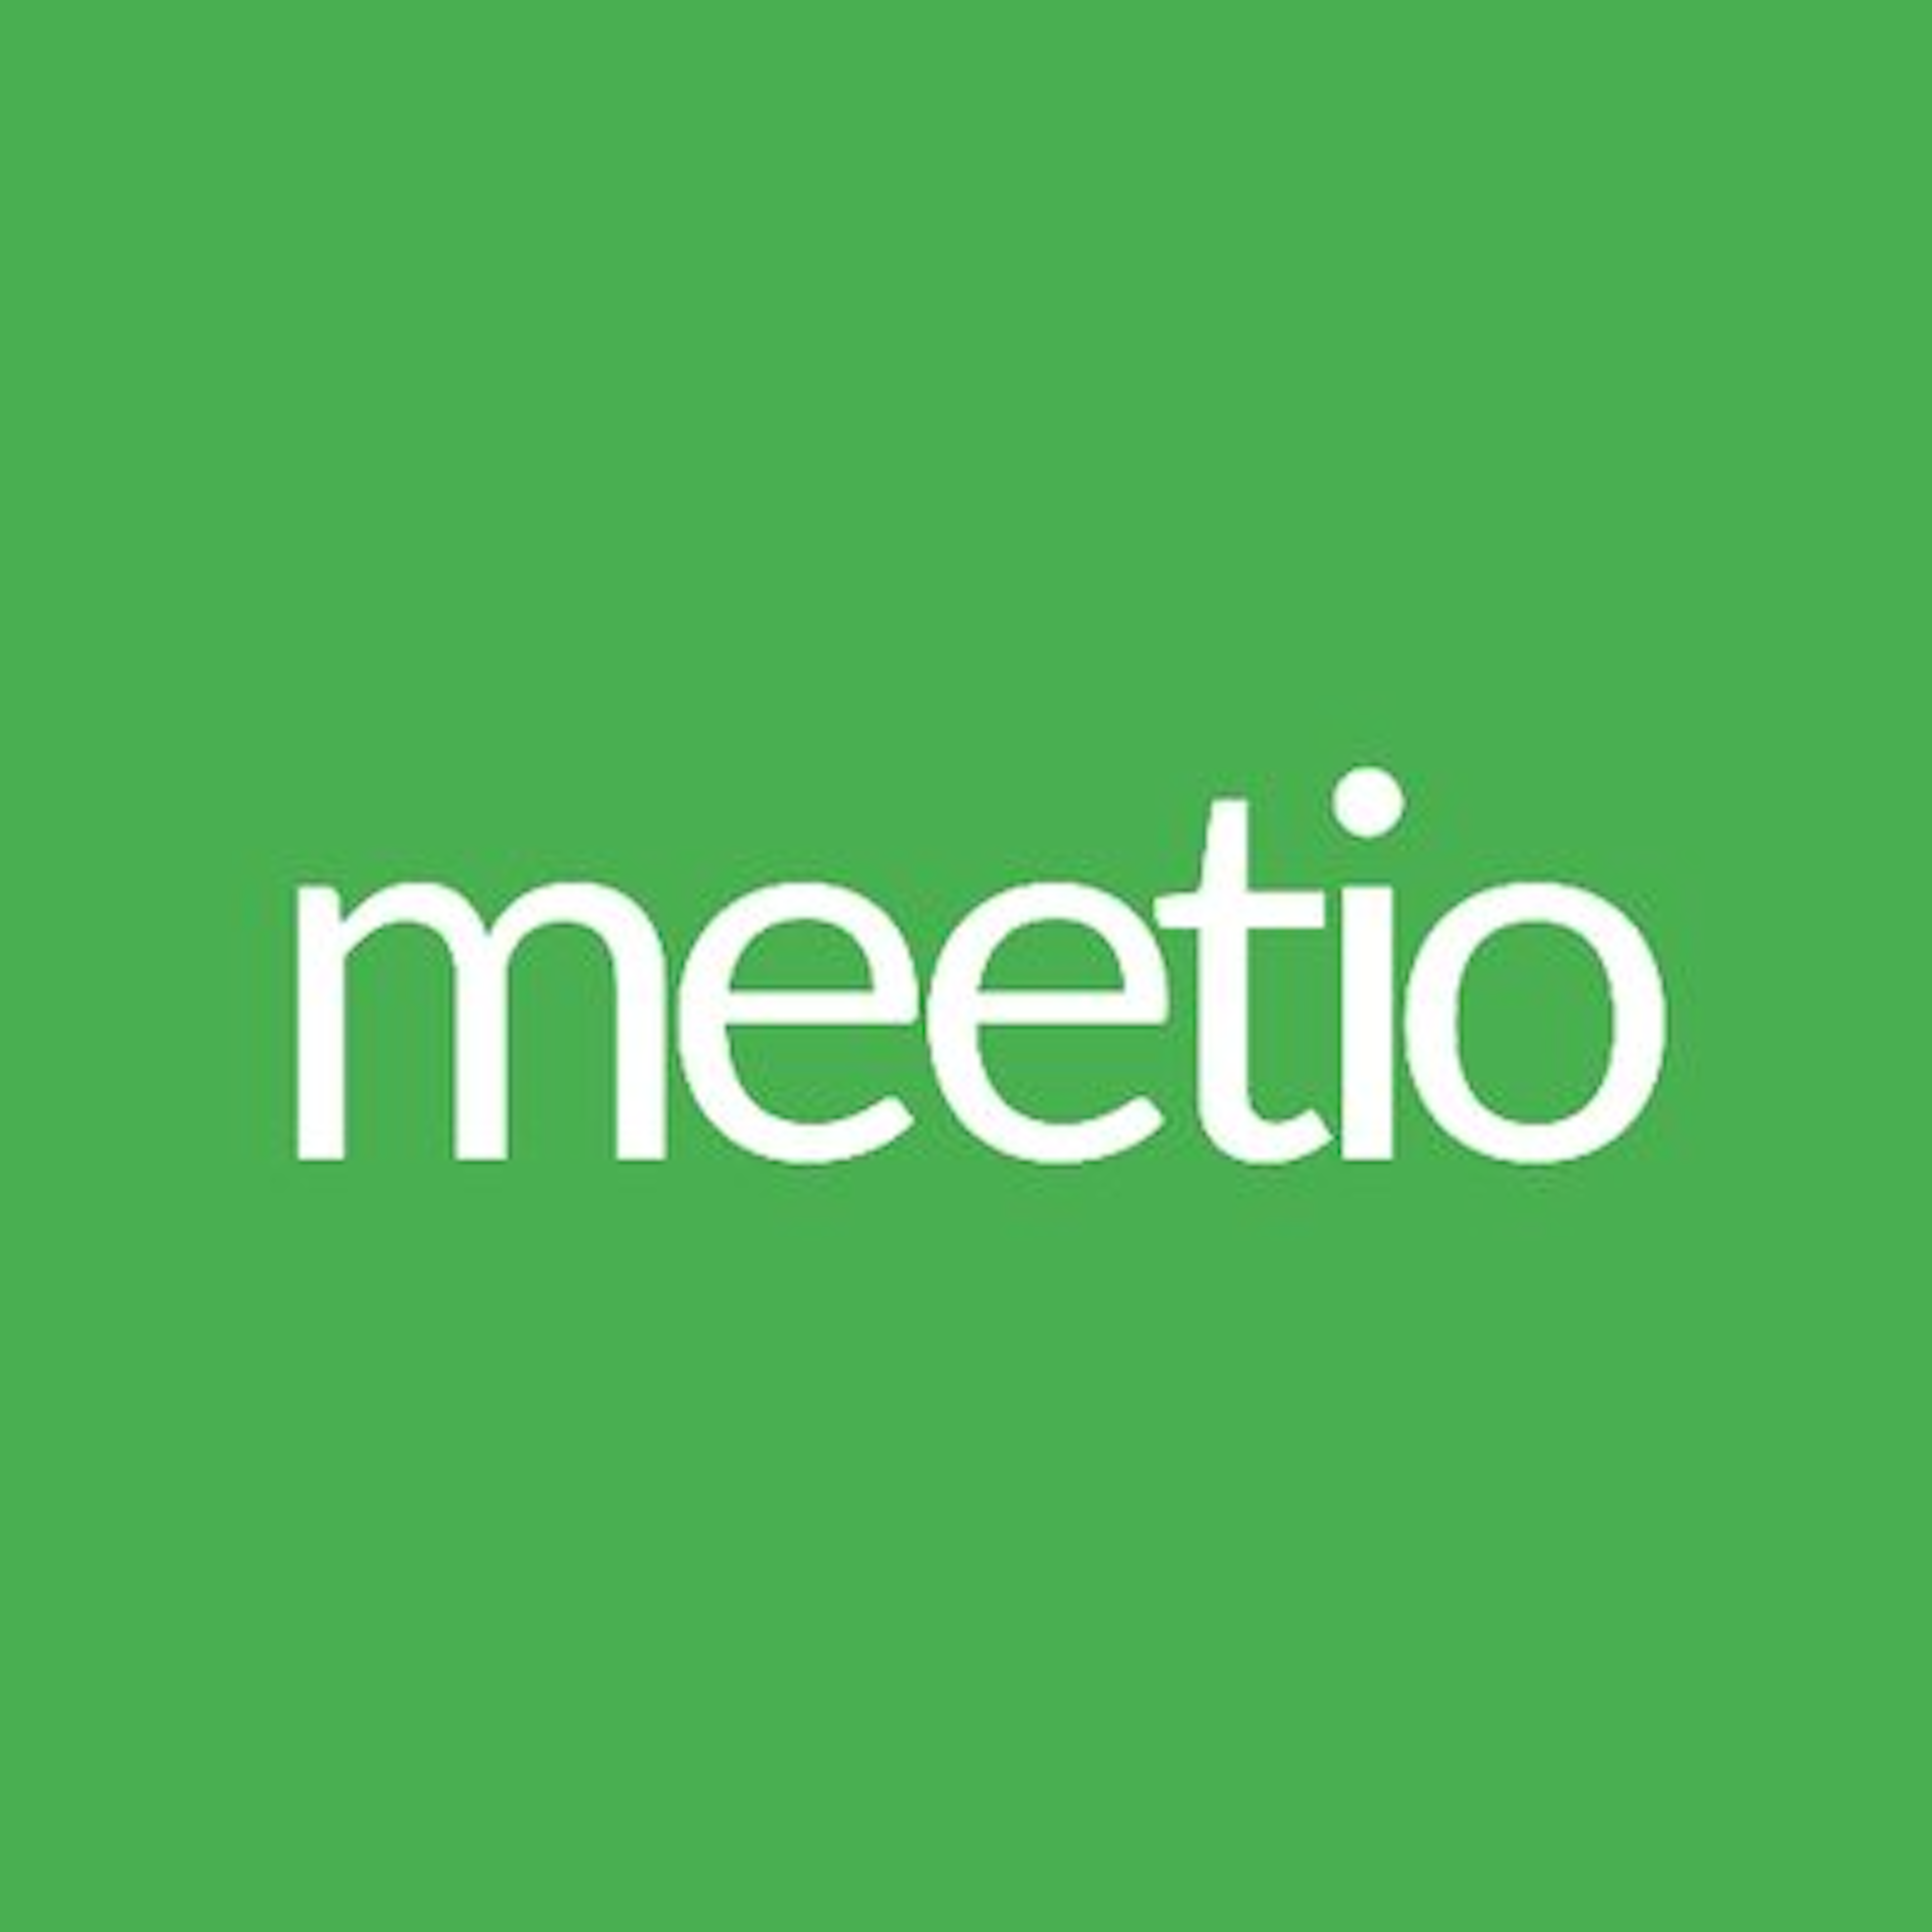 Meetio Logo